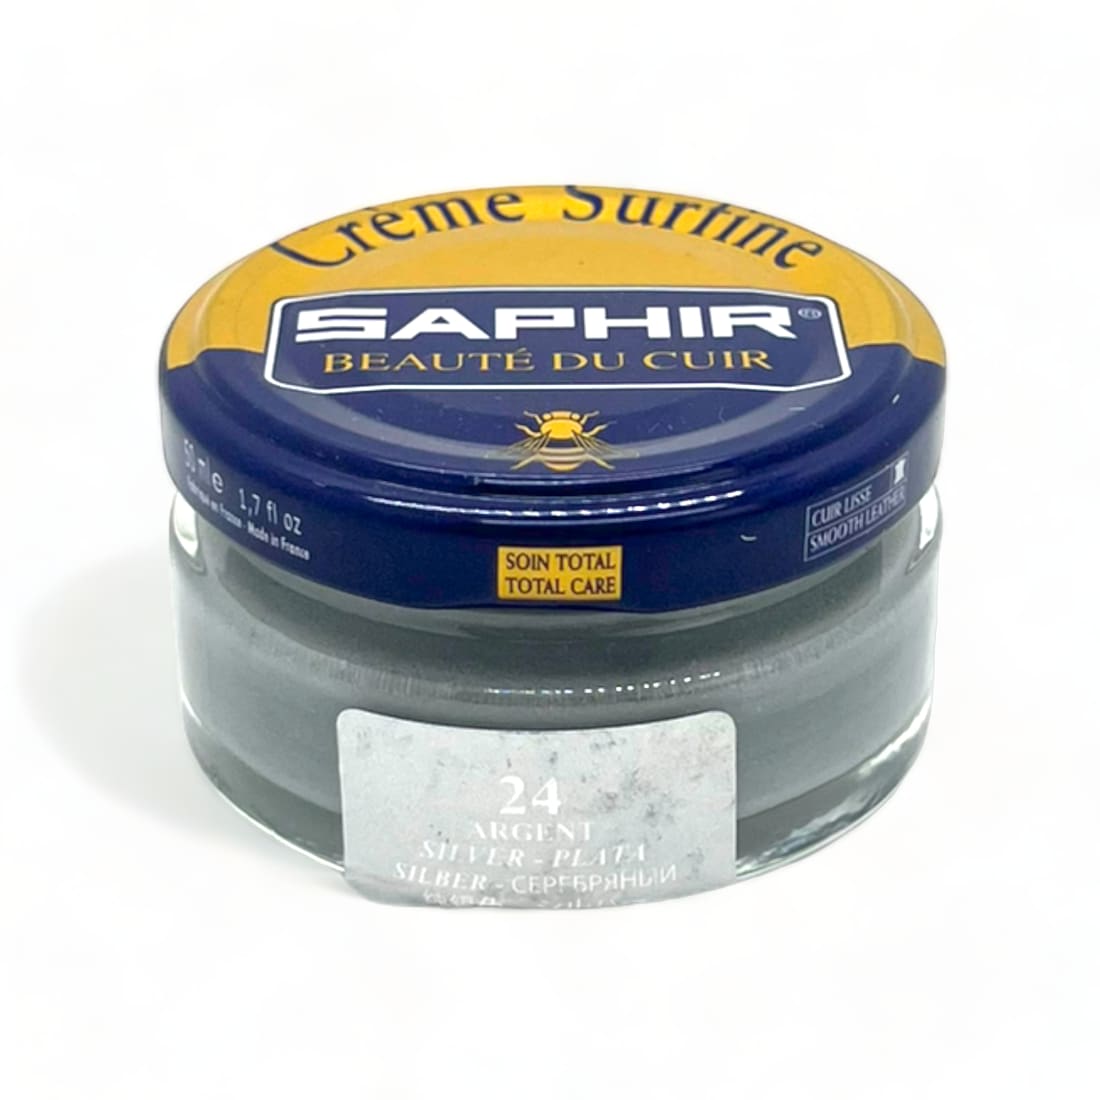 Cirage Crème Surfine Argent - Saphir - 50 ml - Accessoires